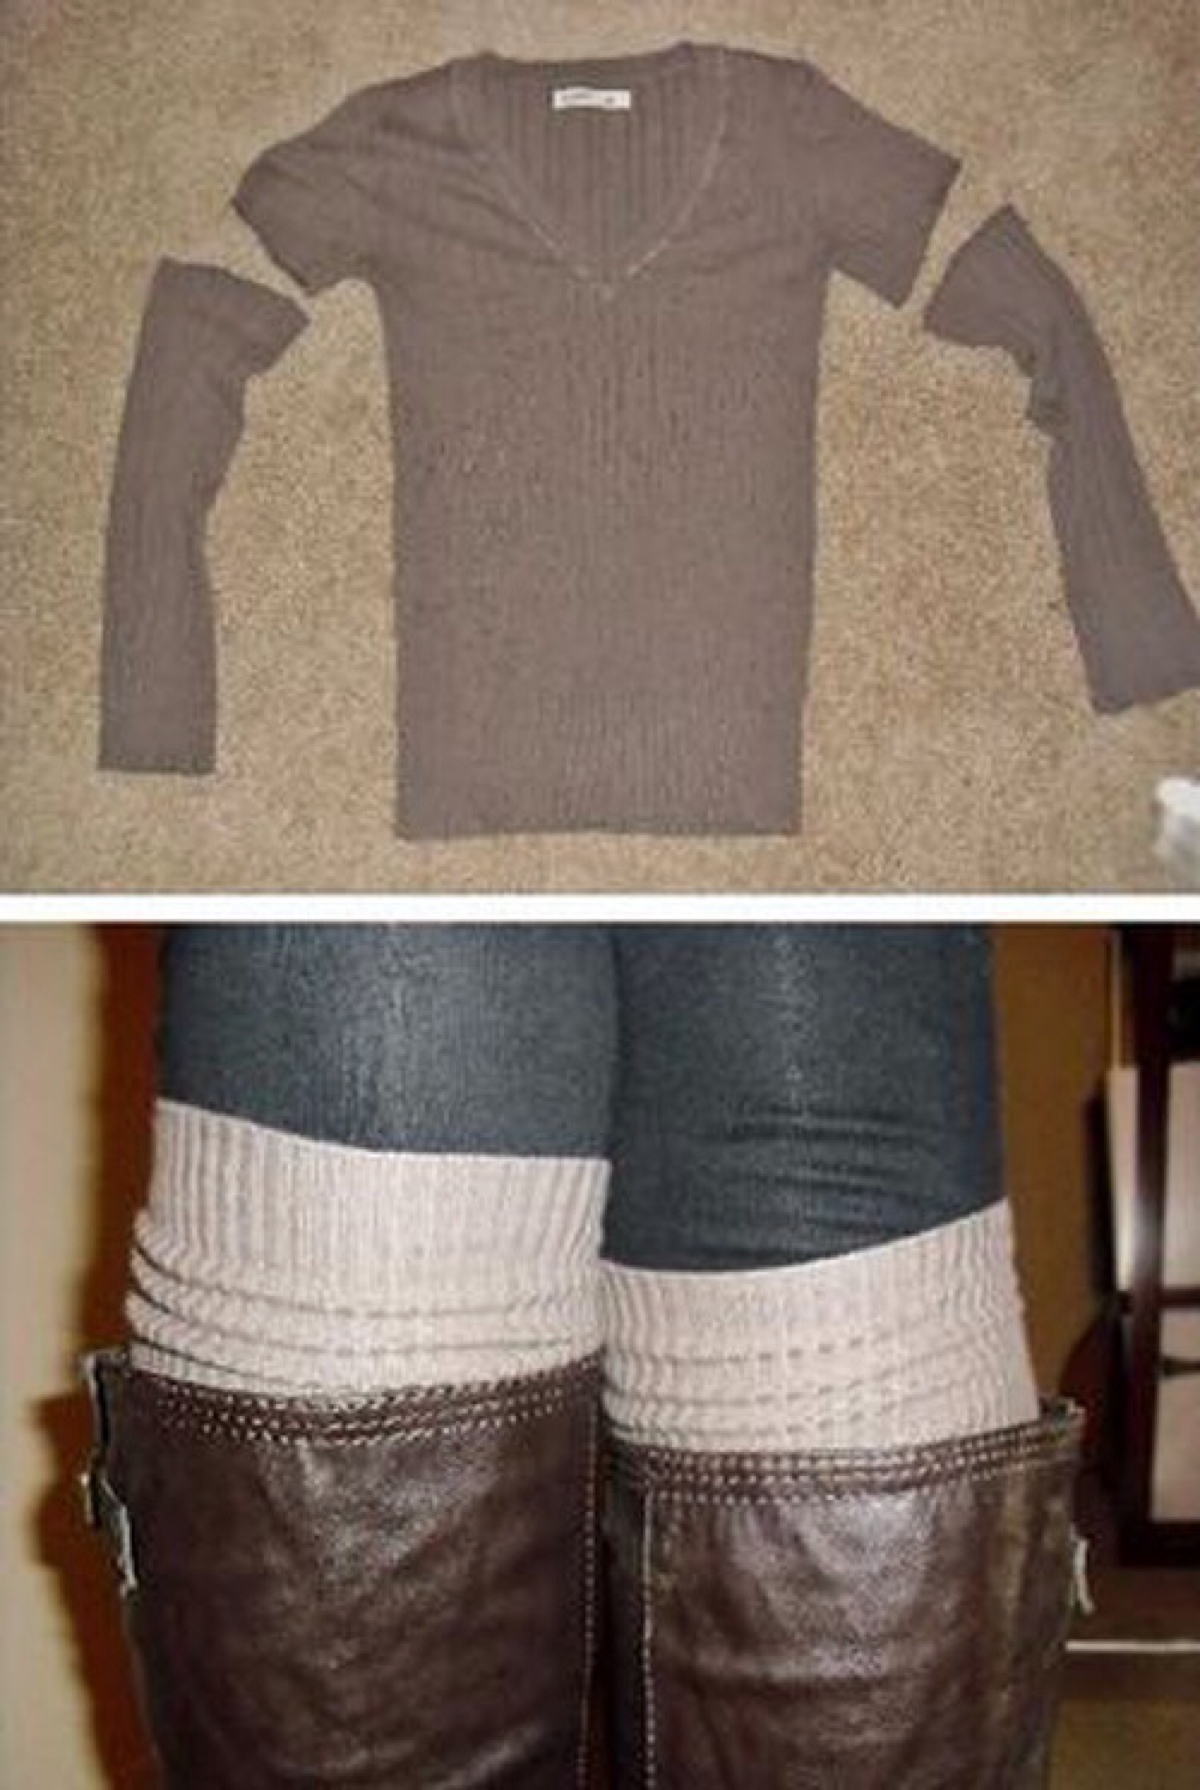 旧毛衣改造袜子图片